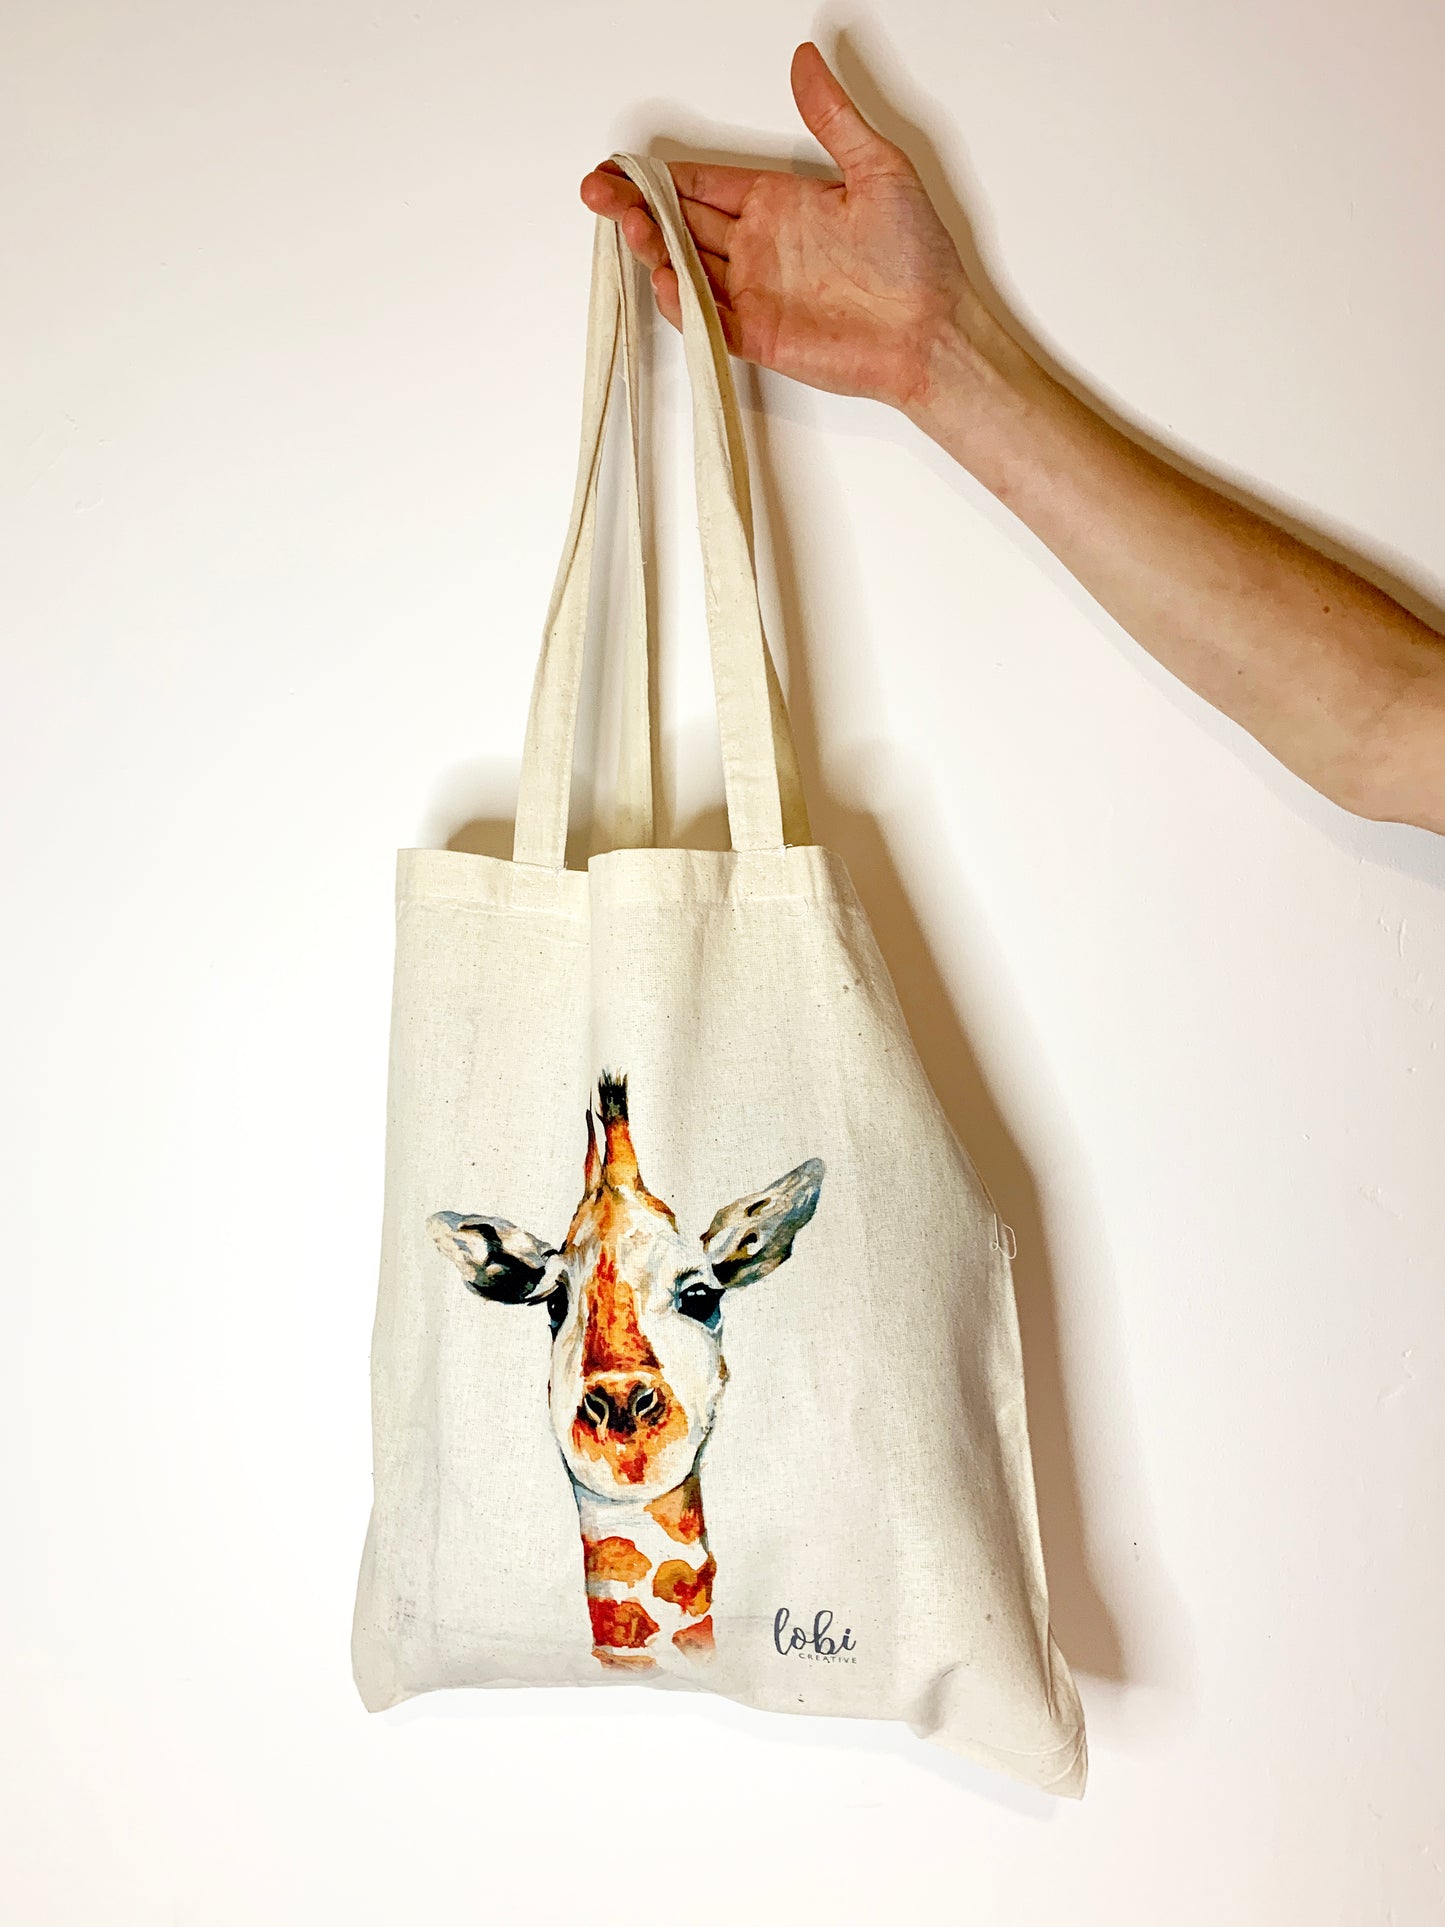 Watercolour Giraffe Cotton Tote Bag